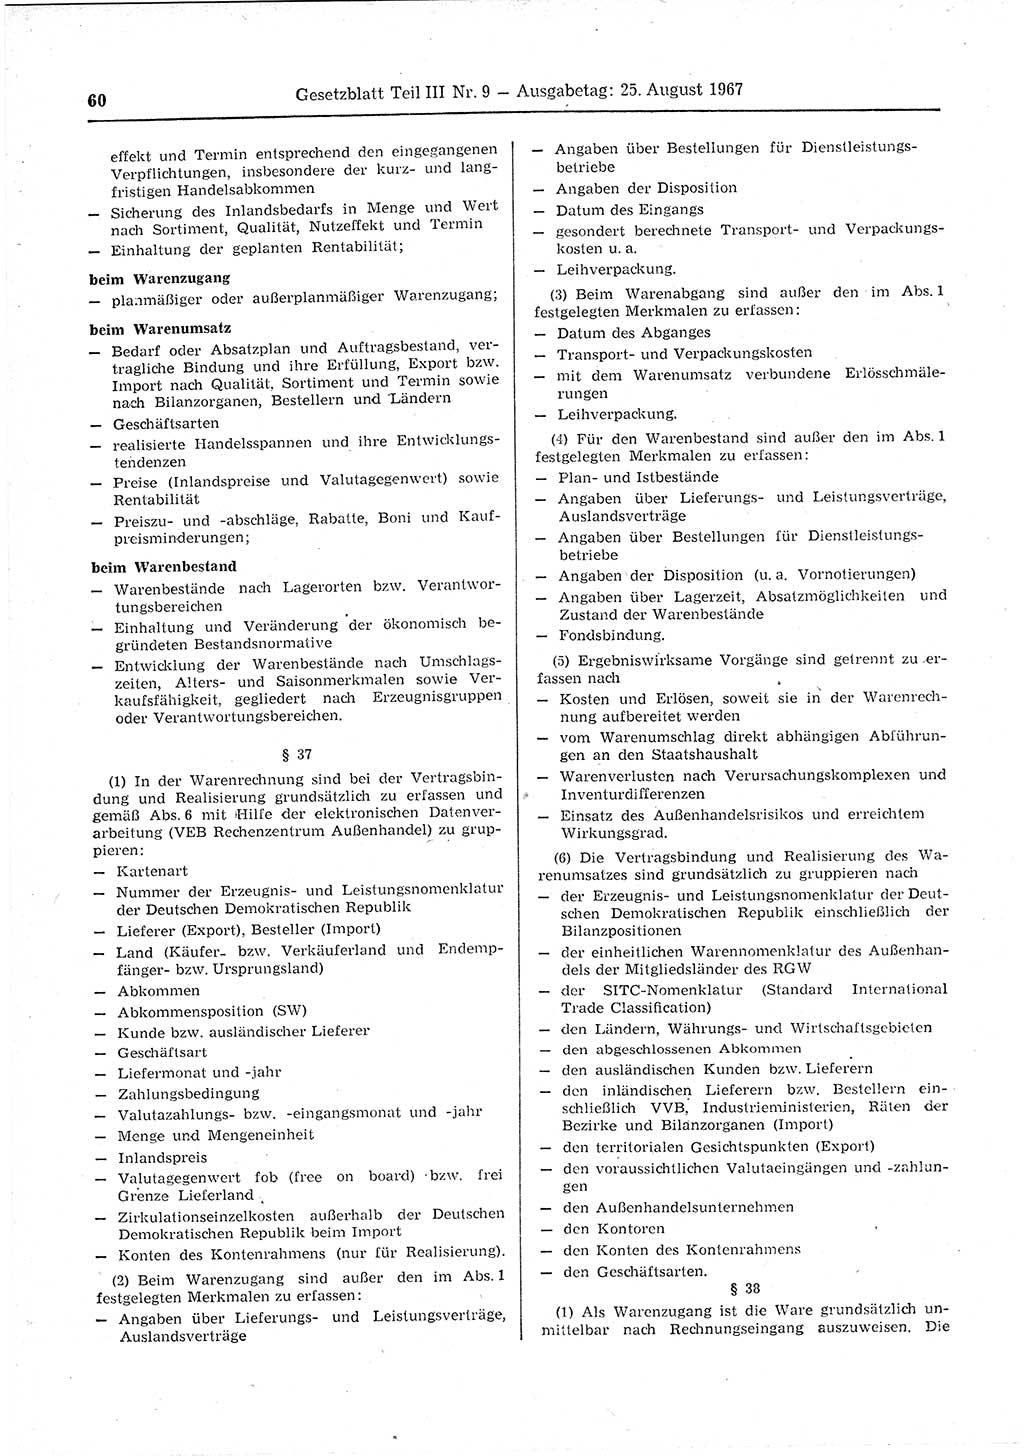 Gesetzblatt (GBl.) der Deutschen Demokratischen Republik (DDR) Teil ⅠⅠⅠ 1967, Seite 60 (GBl. DDR ⅠⅠⅠ 1967, S. 60)